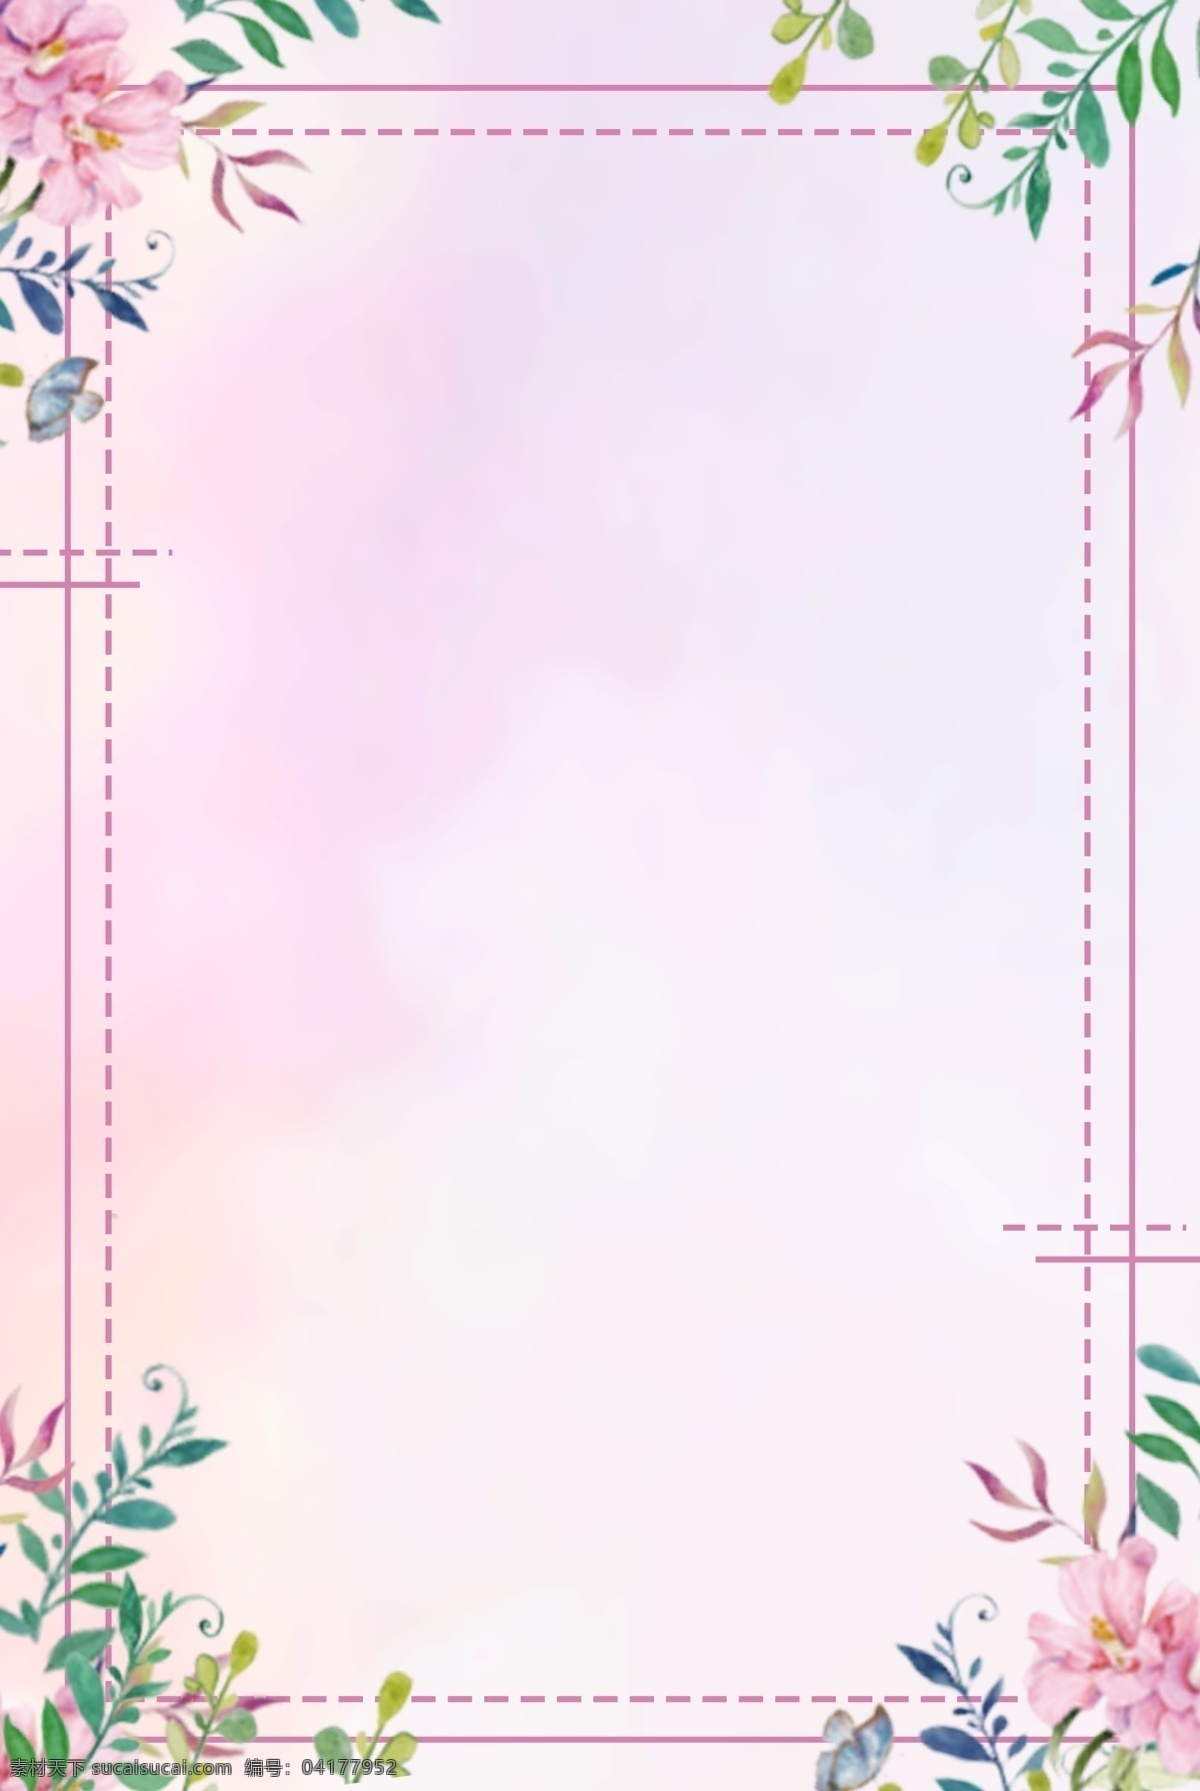 夏天 夏至 清新 粉色 海报 背景 粉色花束 边框 小清新 唯美 海报背景 平面背景 psd分层